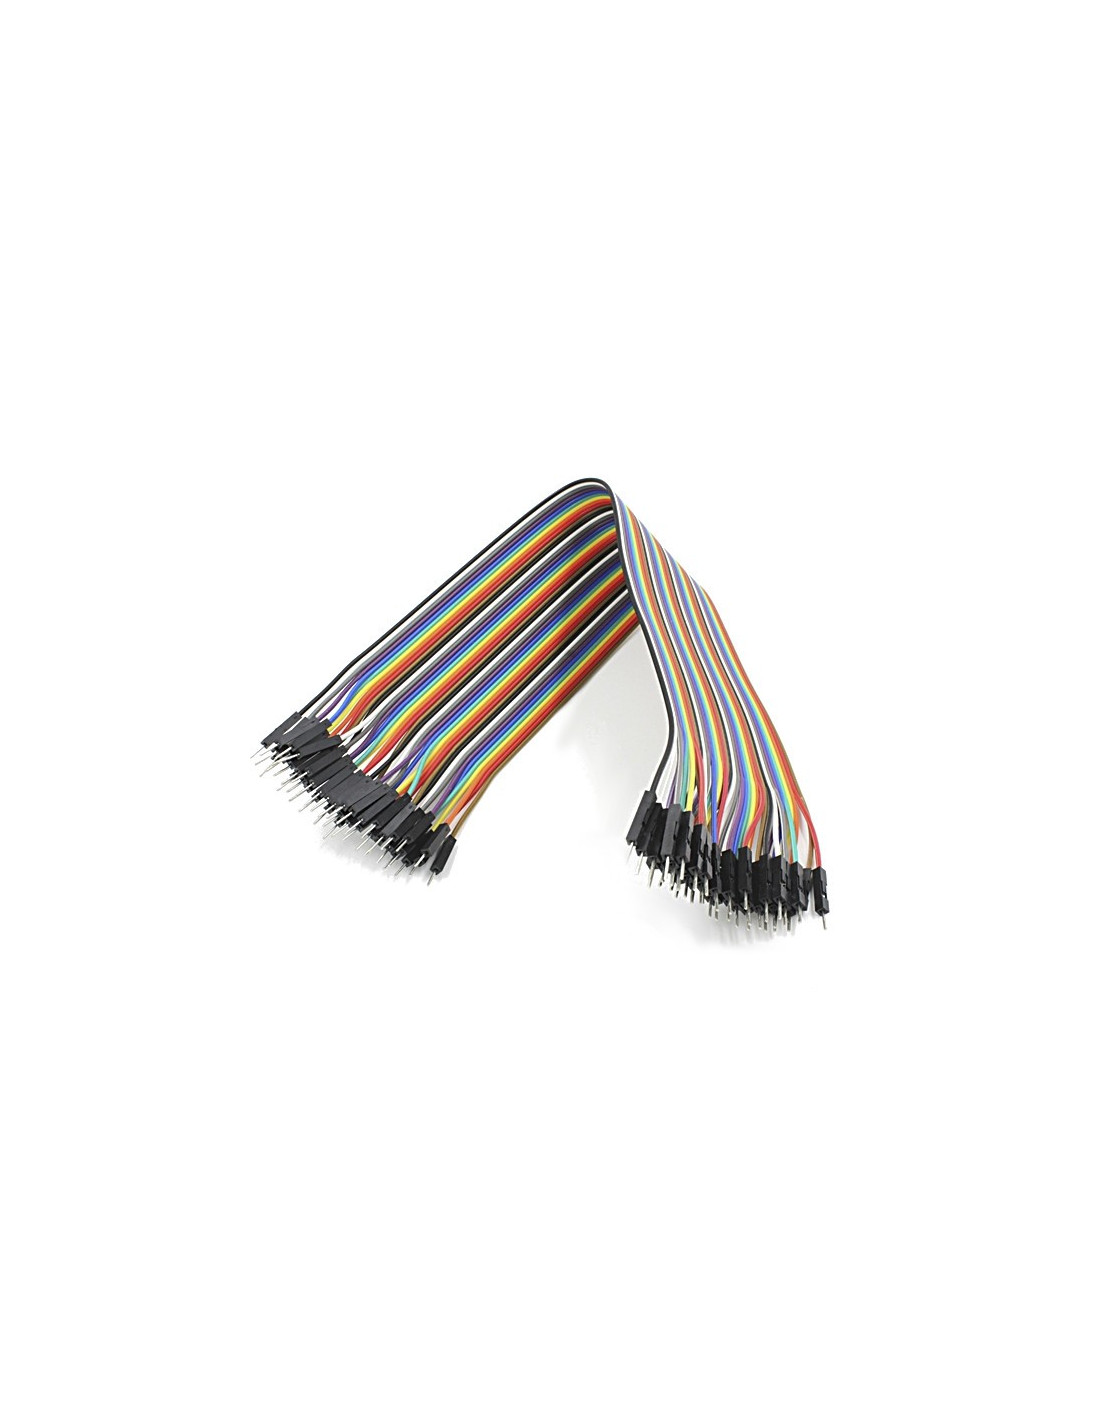 Cables dupont 100cm, M-M (40uds)